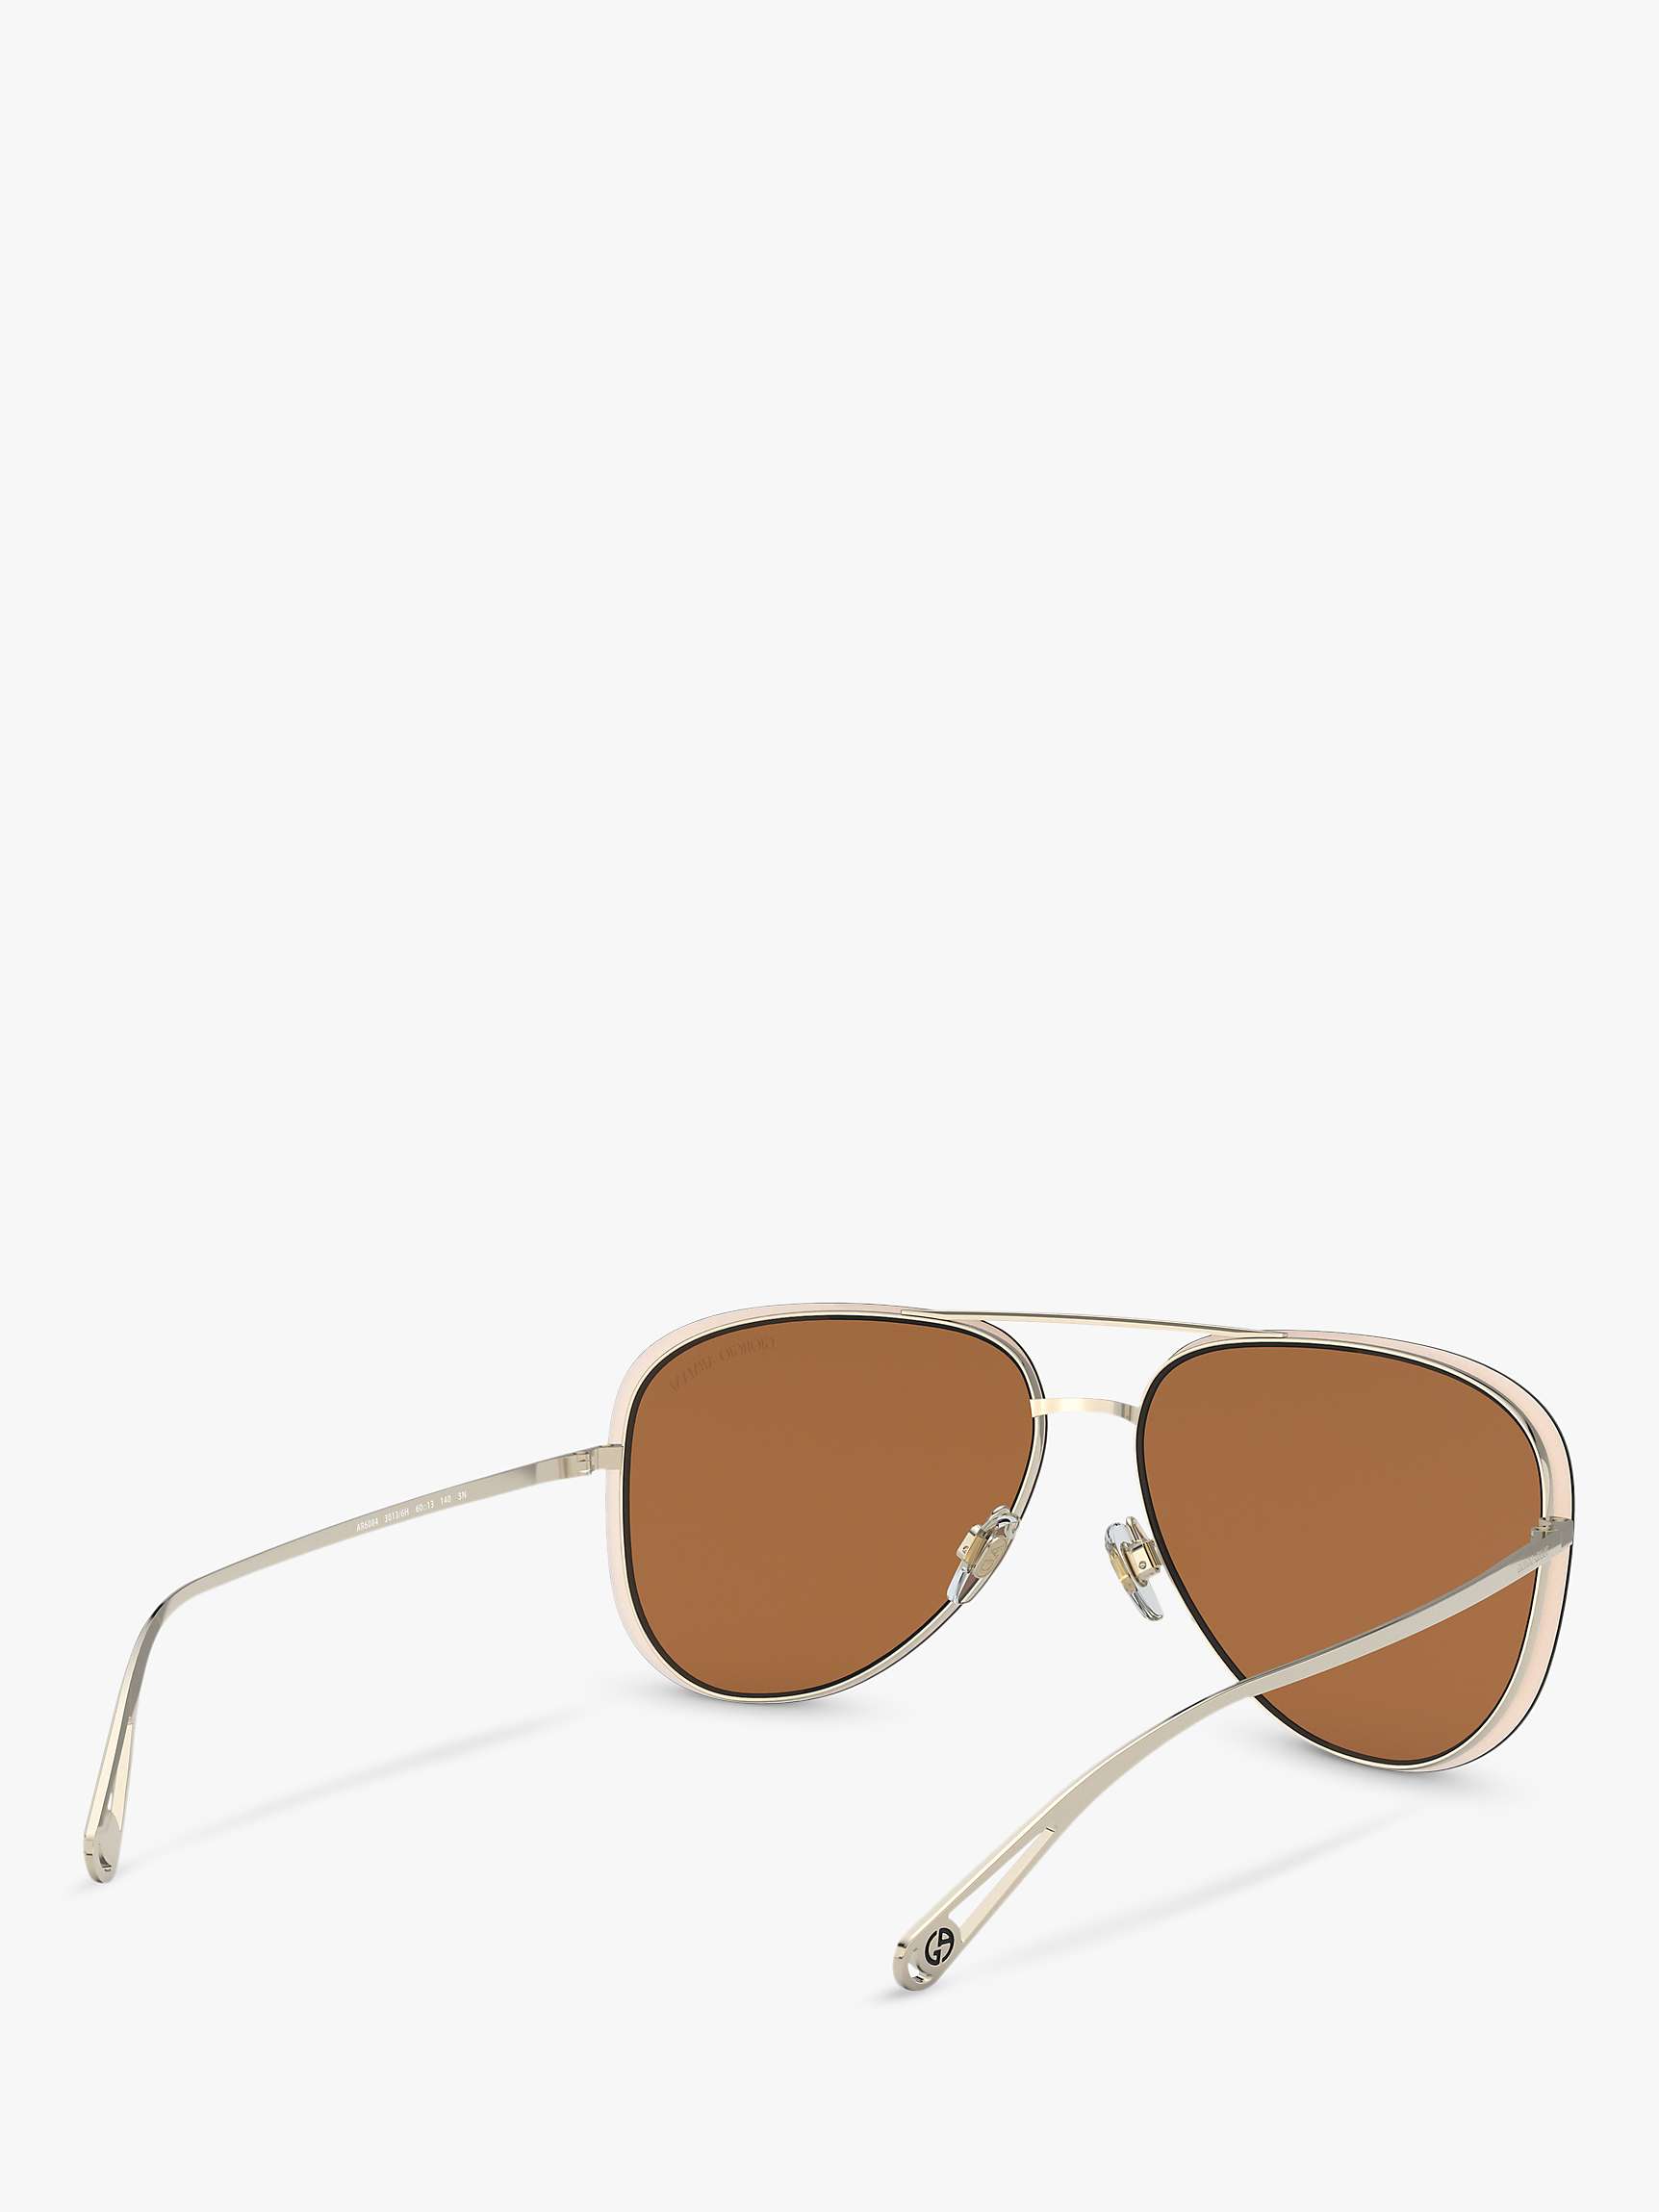 Buy Giorgio Armani AR6084 Women's Aviator Sunglasses Online at johnlewis.com